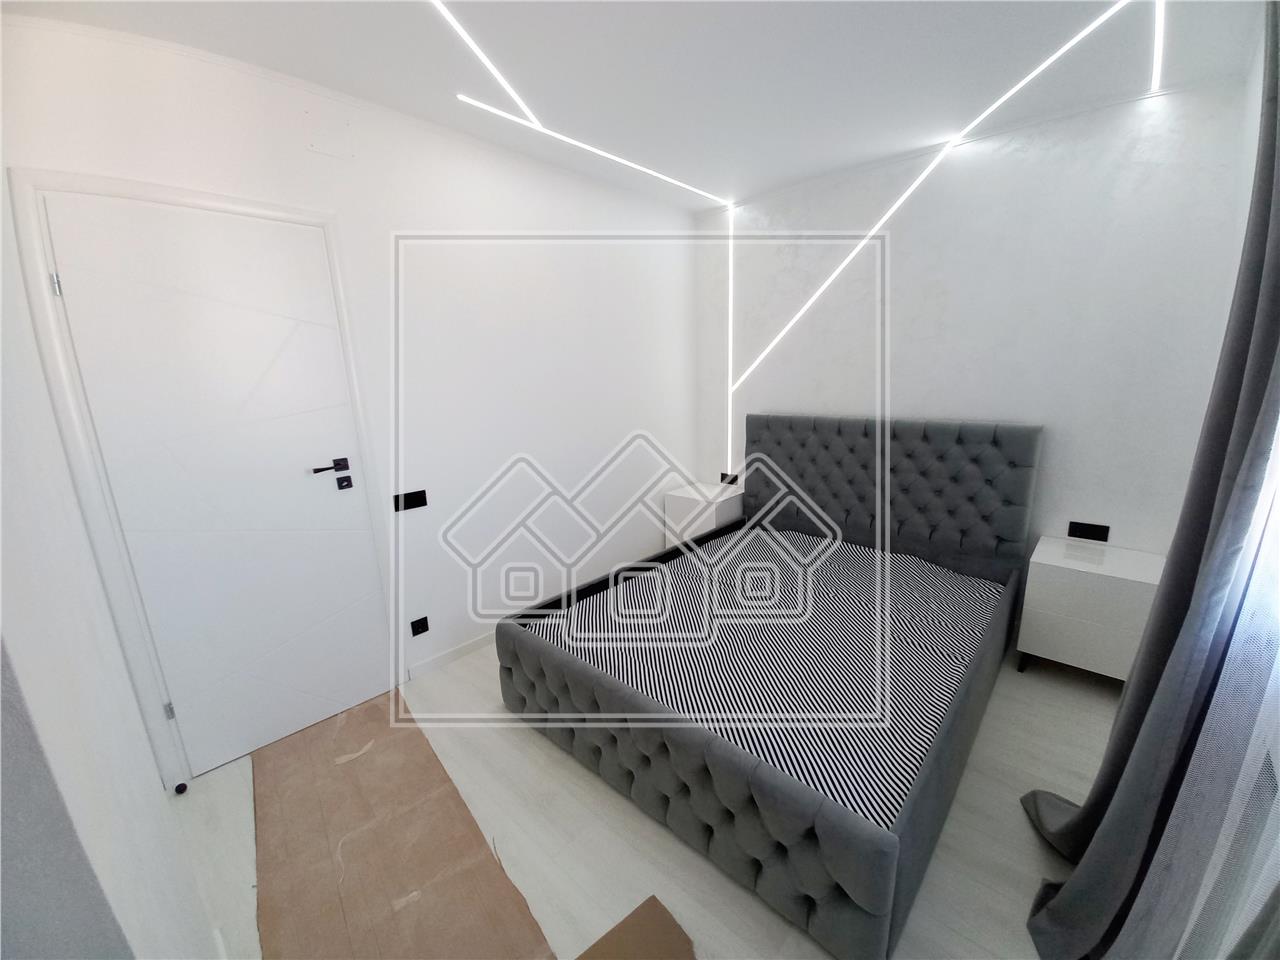 New apartment for sale in Alba Iulia - 2 rooms - Stadium area